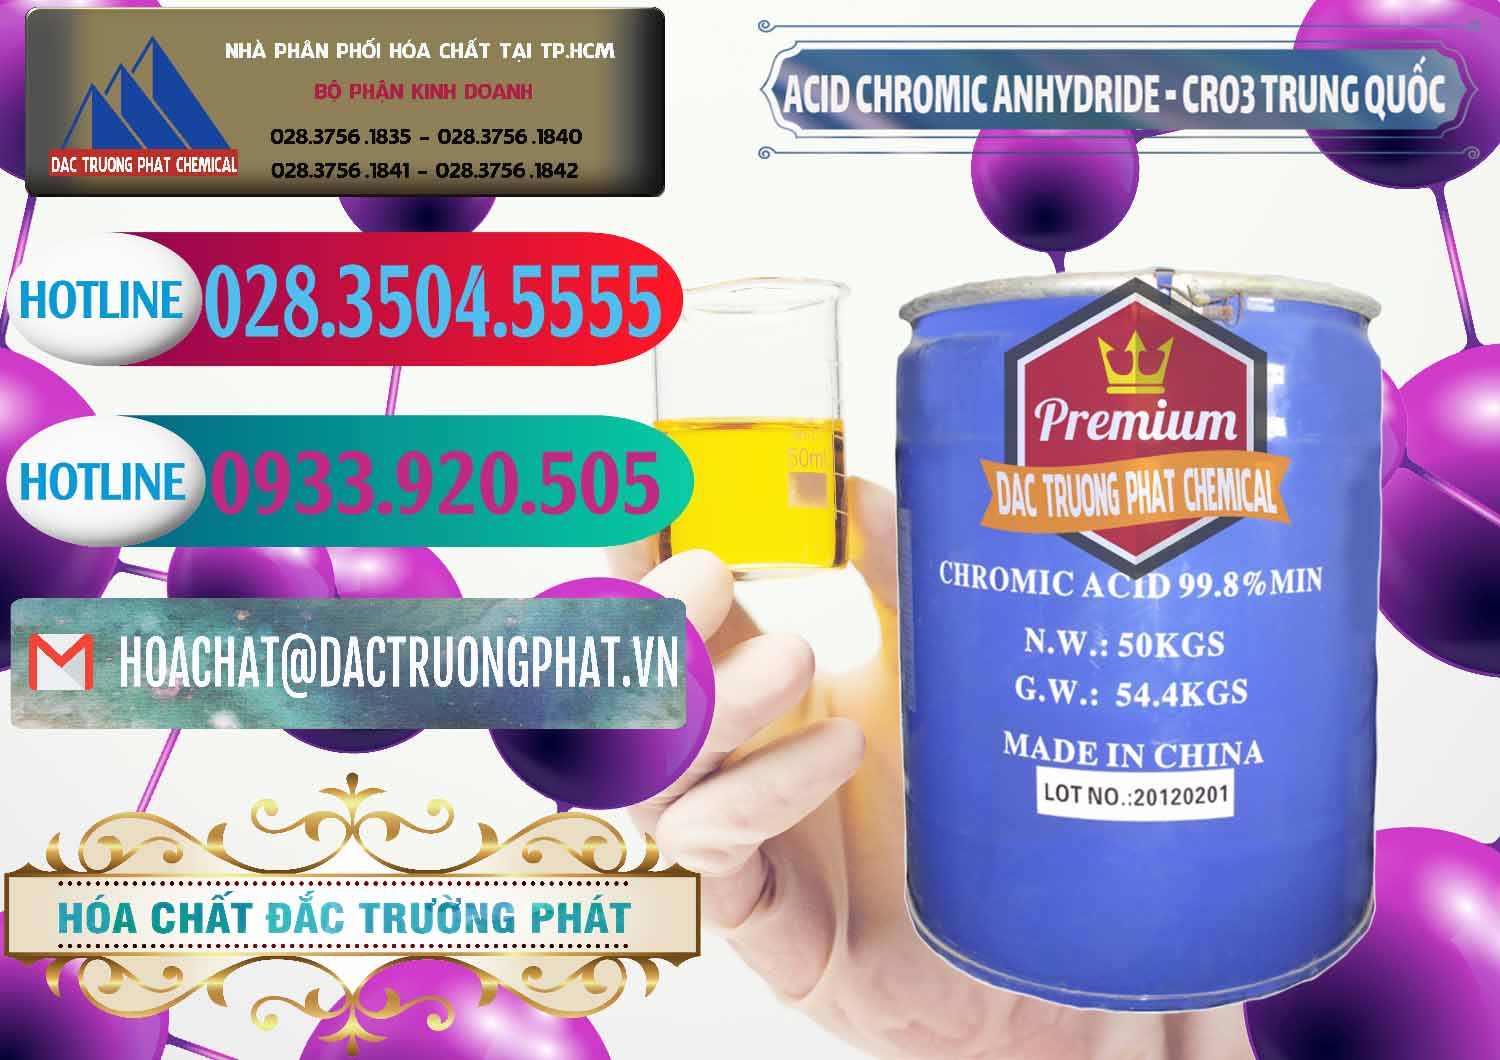 Nơi kinh doanh & bán Acid Chromic Anhydride - Cromic CRO3 Trung Quốc China - 0007 - Cty nhập khẩu & cung cấp hóa chất tại TP.HCM - truongphat.vn